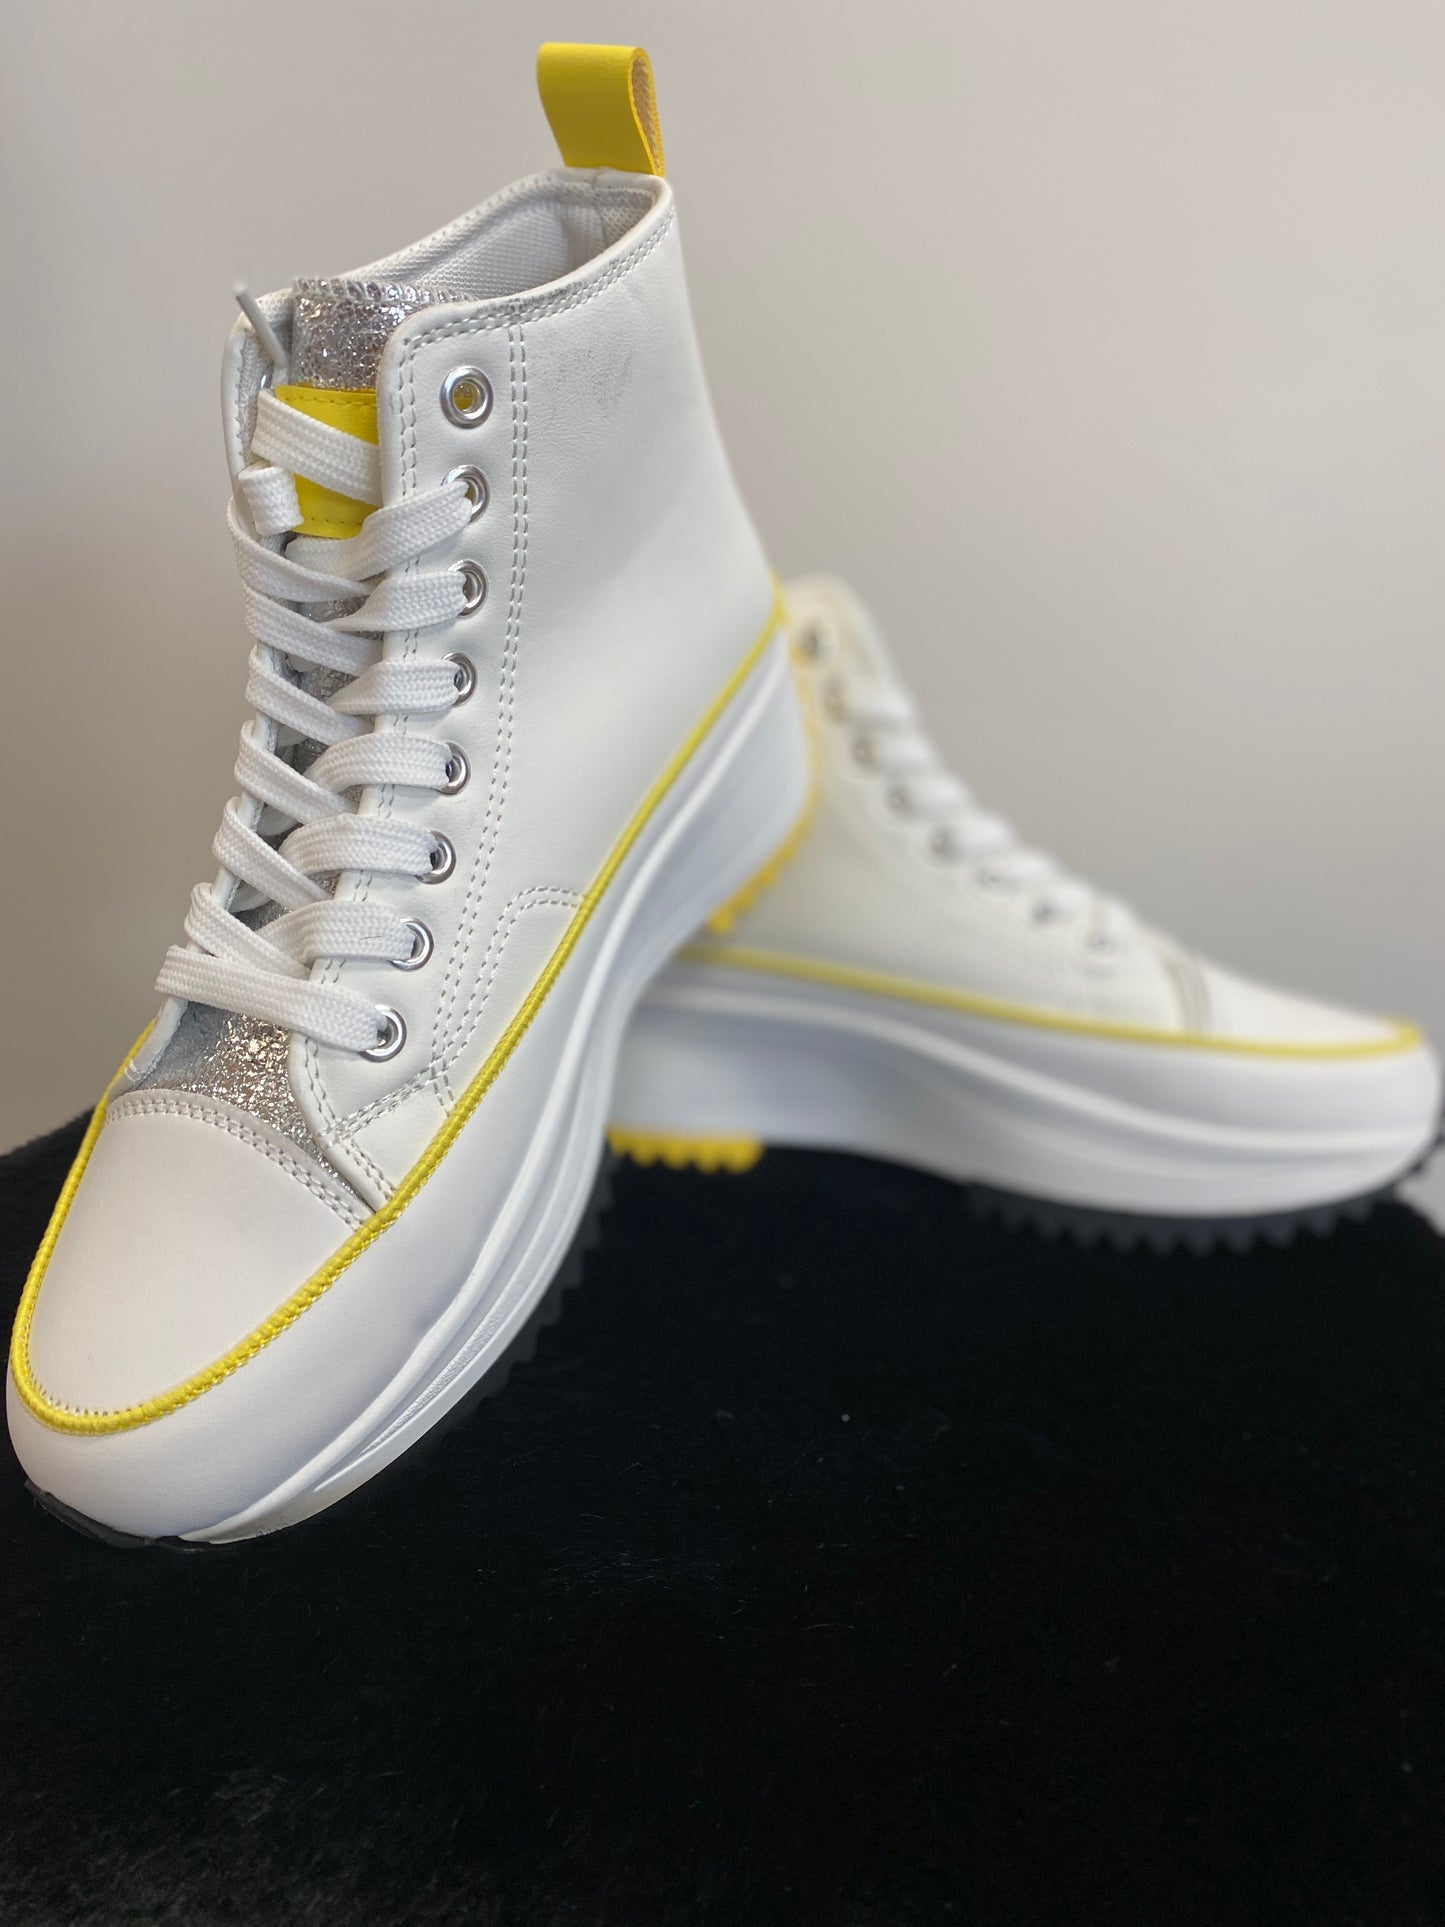 Sneaker "Smiley" weiß/gelb  mit silver metallic Zunge